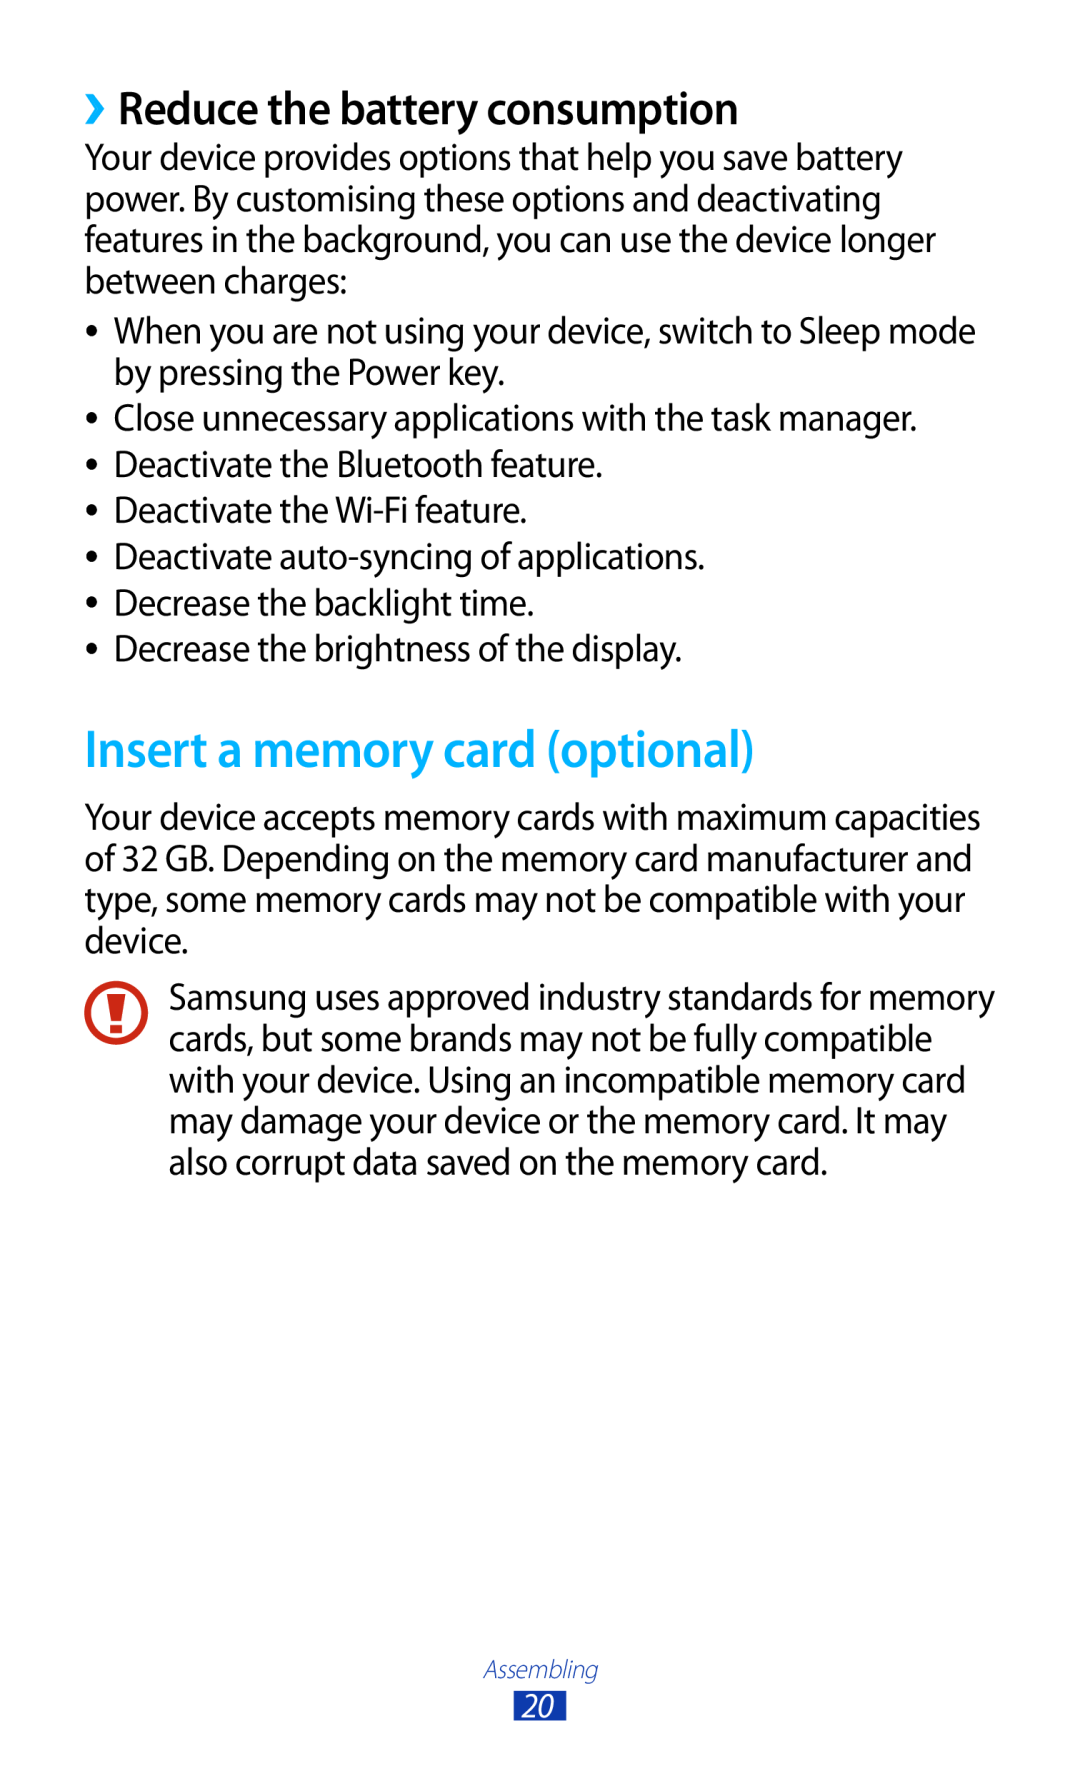 Samsung GT-S7560UWAXEF, GT-S7560ZKAVDR, GT-S7560ZKAPRT manual Insert a memory card optional, ››Reduce the battery consumption 